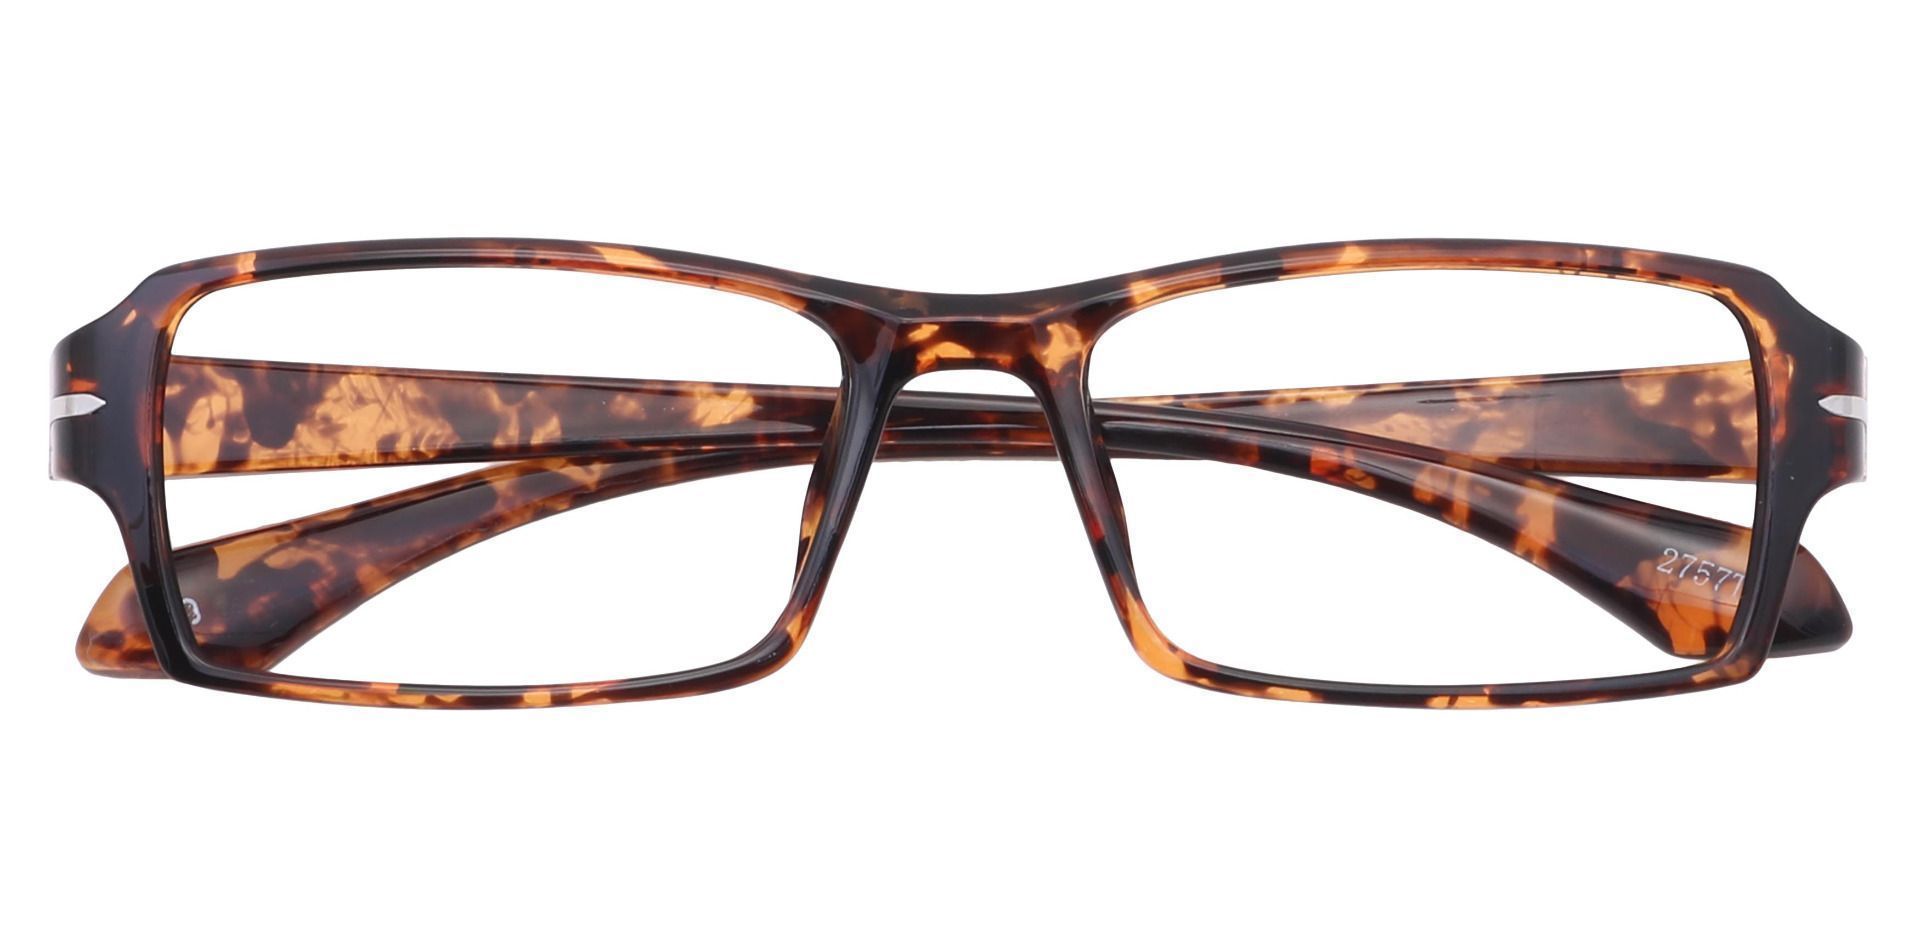 Kaiser Rectangle Eyeglasses Frame - Tortoise